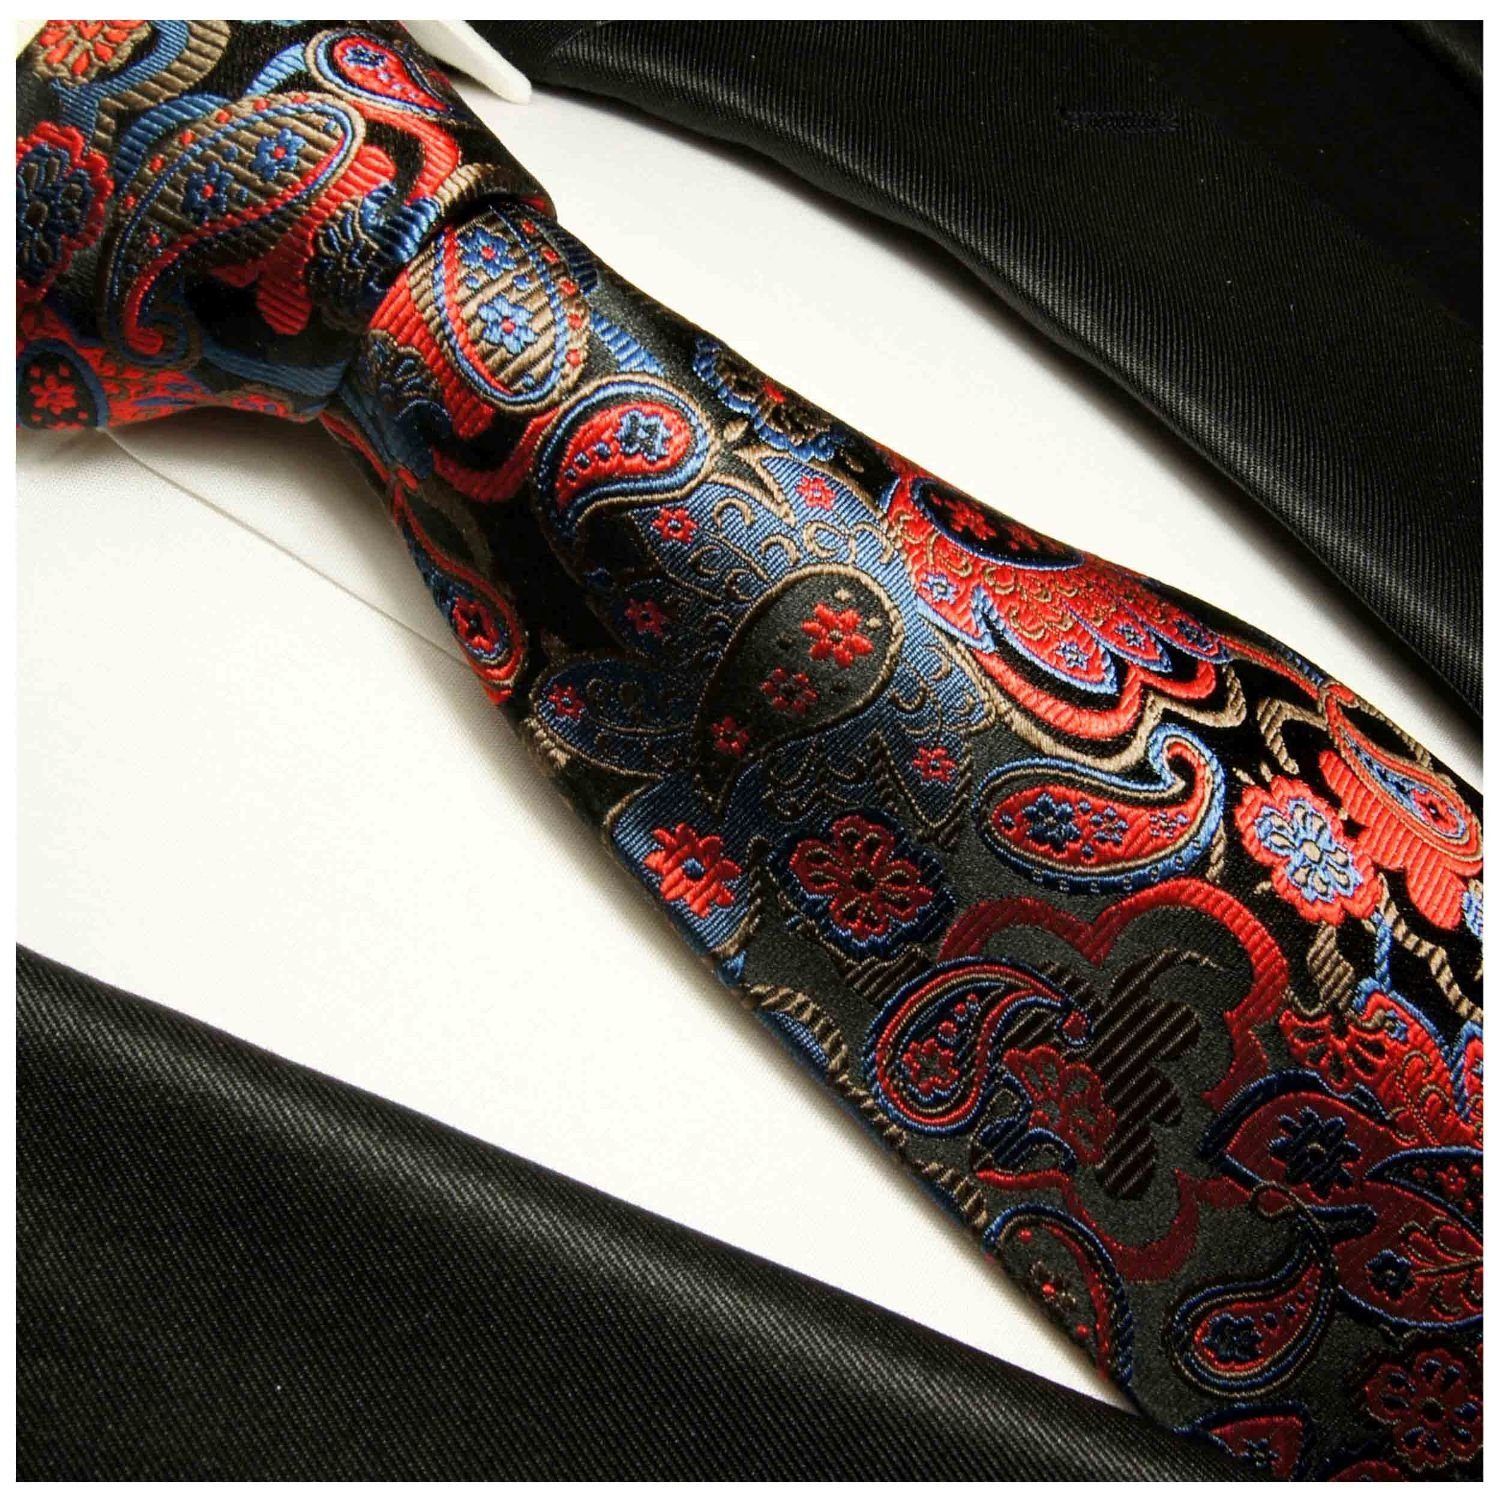 Herren Krawatten Paul Malone Krawatte Elegante Seidenkrawatte Herren Schlips modern paisley brokat 100% Seide Schmal (6cm), rot 